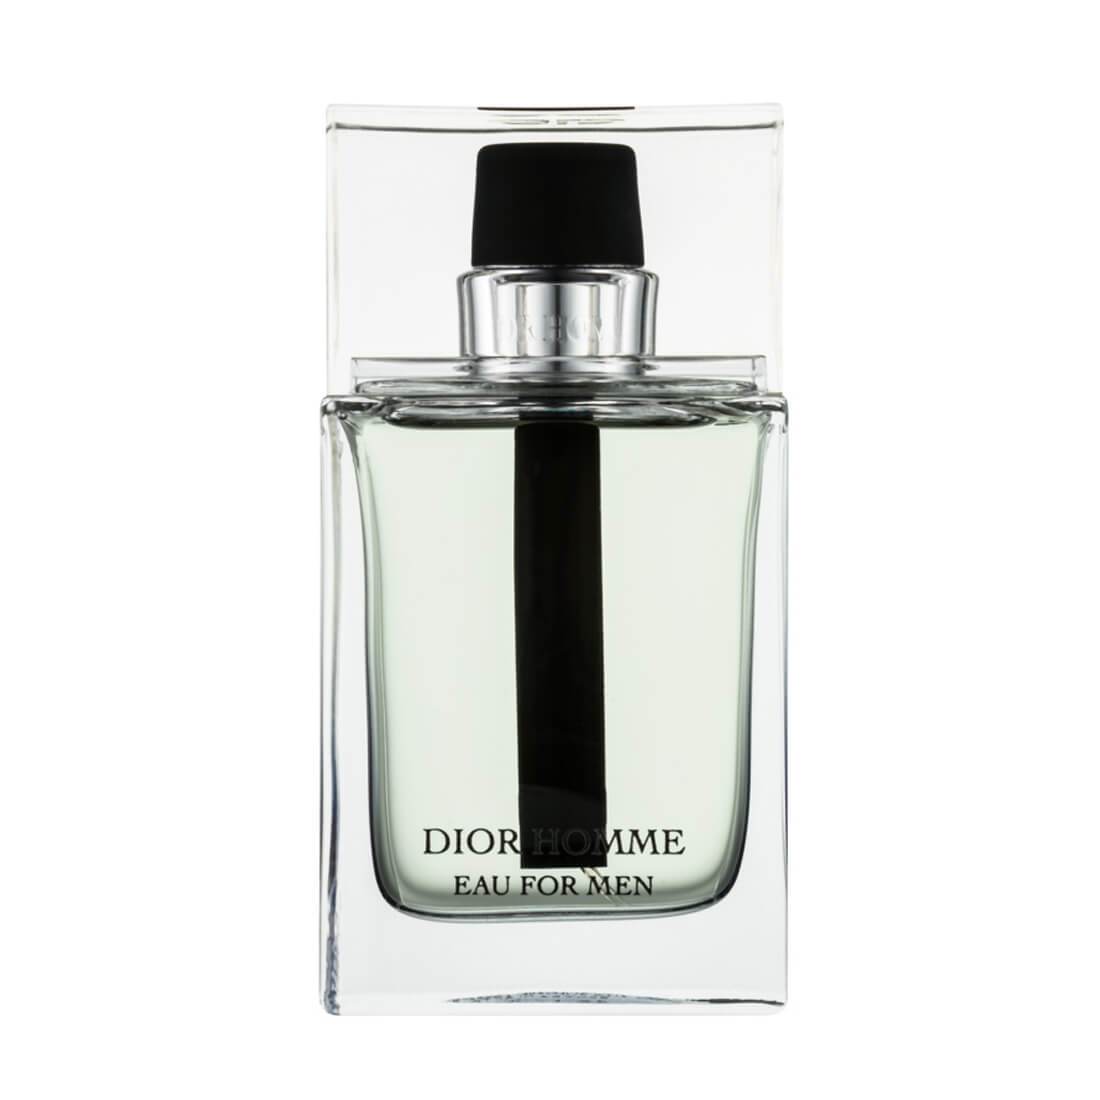 Christian Dior Homme Eau For Men Perfume Eau De Toilette - 100ml